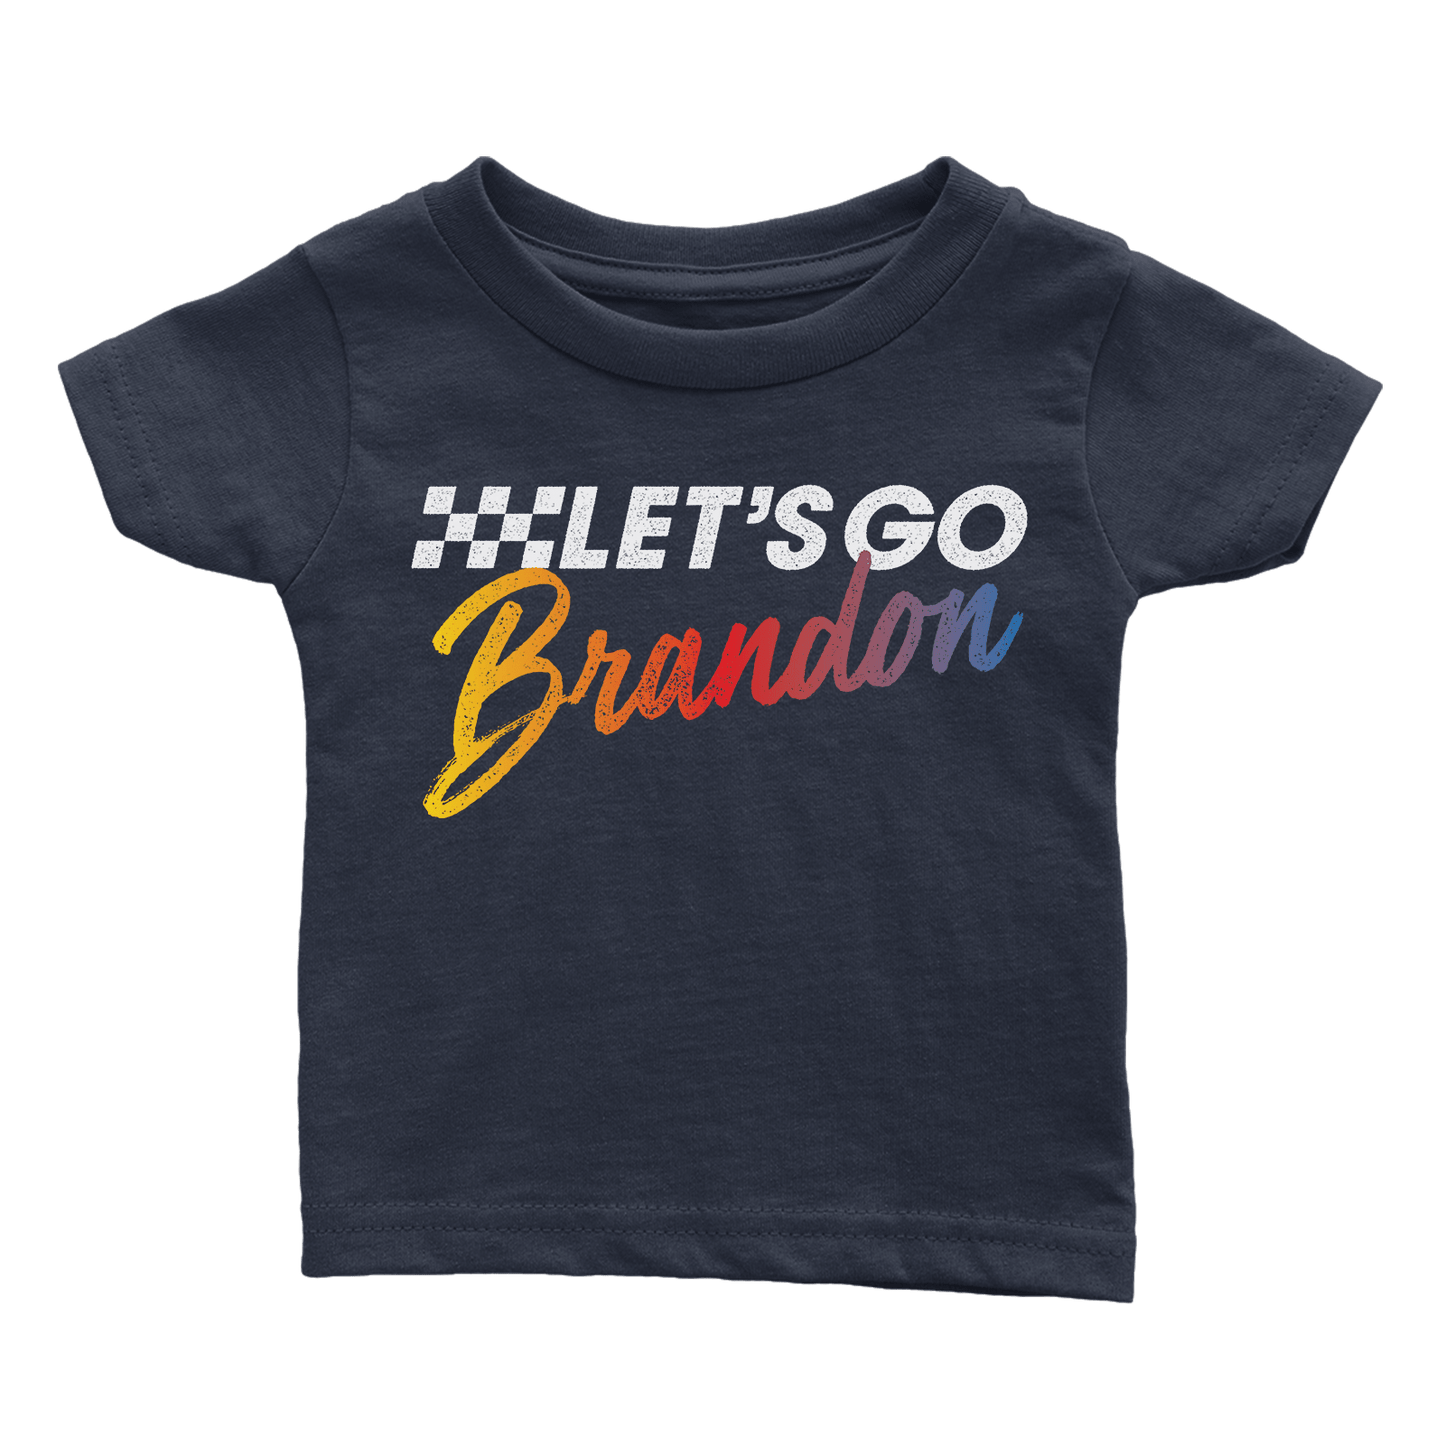 Apparel Premium Infant Shirt / Navy / 6 Months Let's Go Brandon - Rugrats